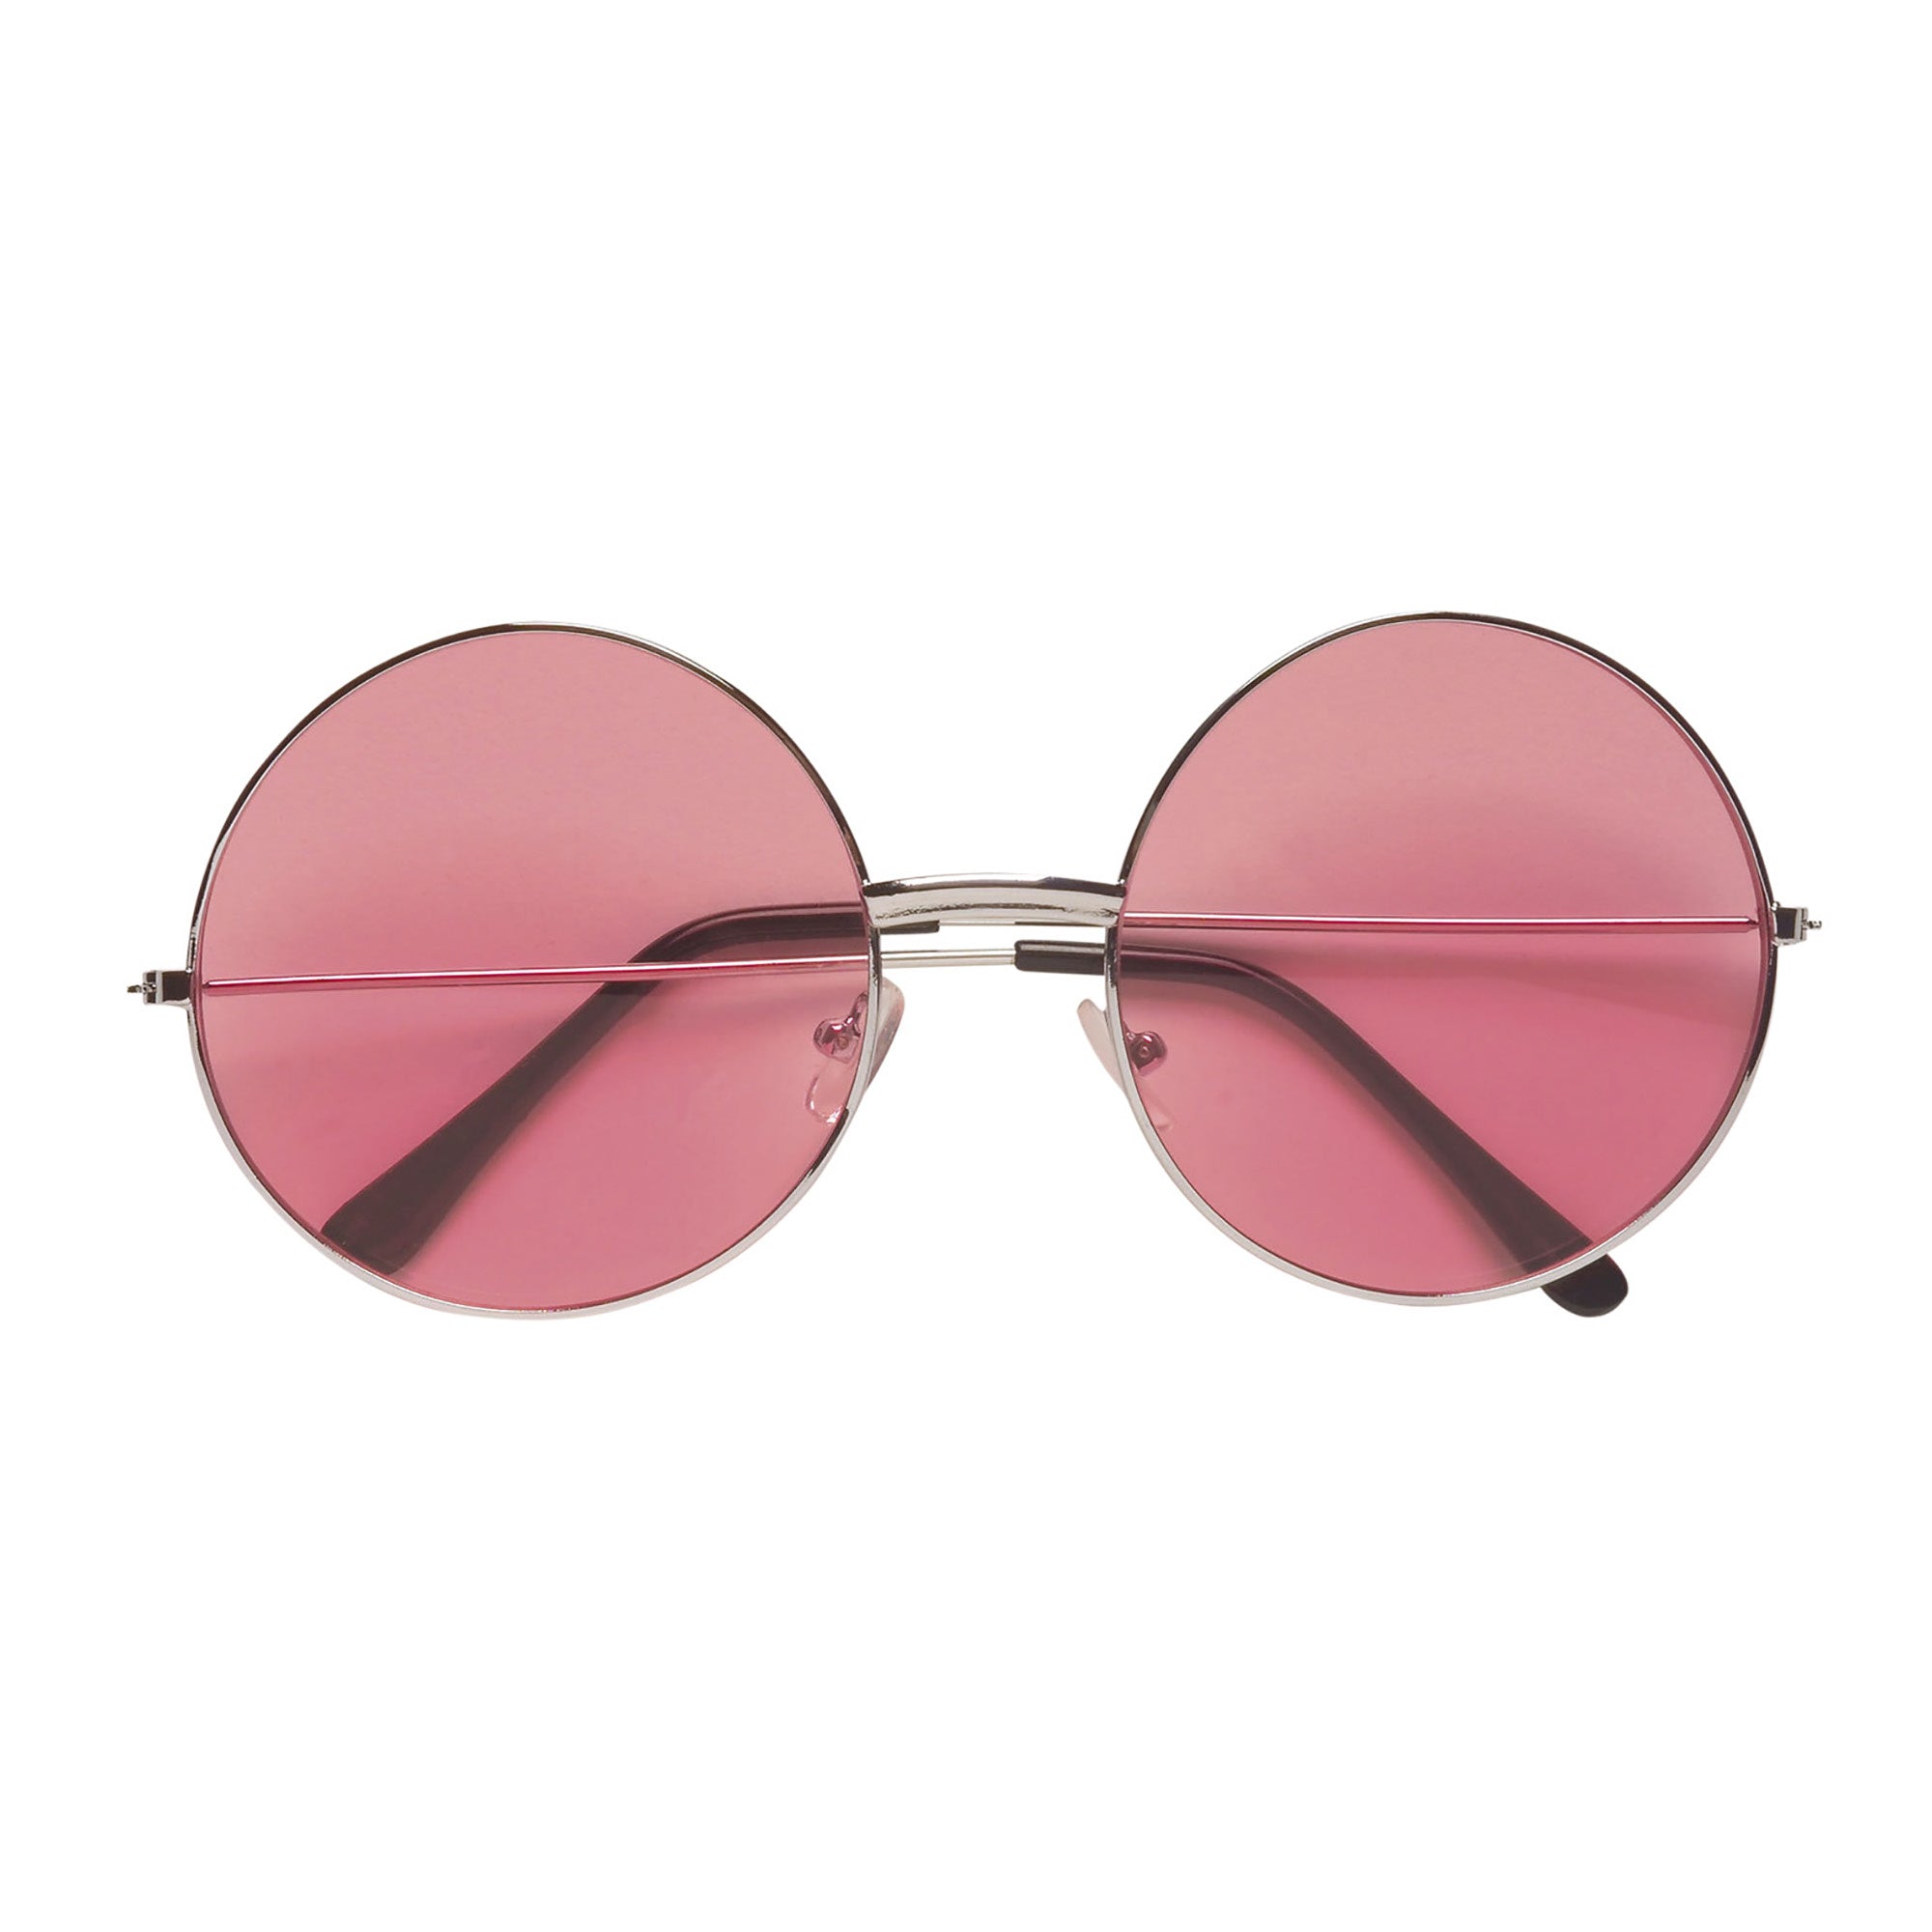 Widmann -Freaky Bril, 70s Roze Glas - roze - Carnavalskleding - Verkleedkleding